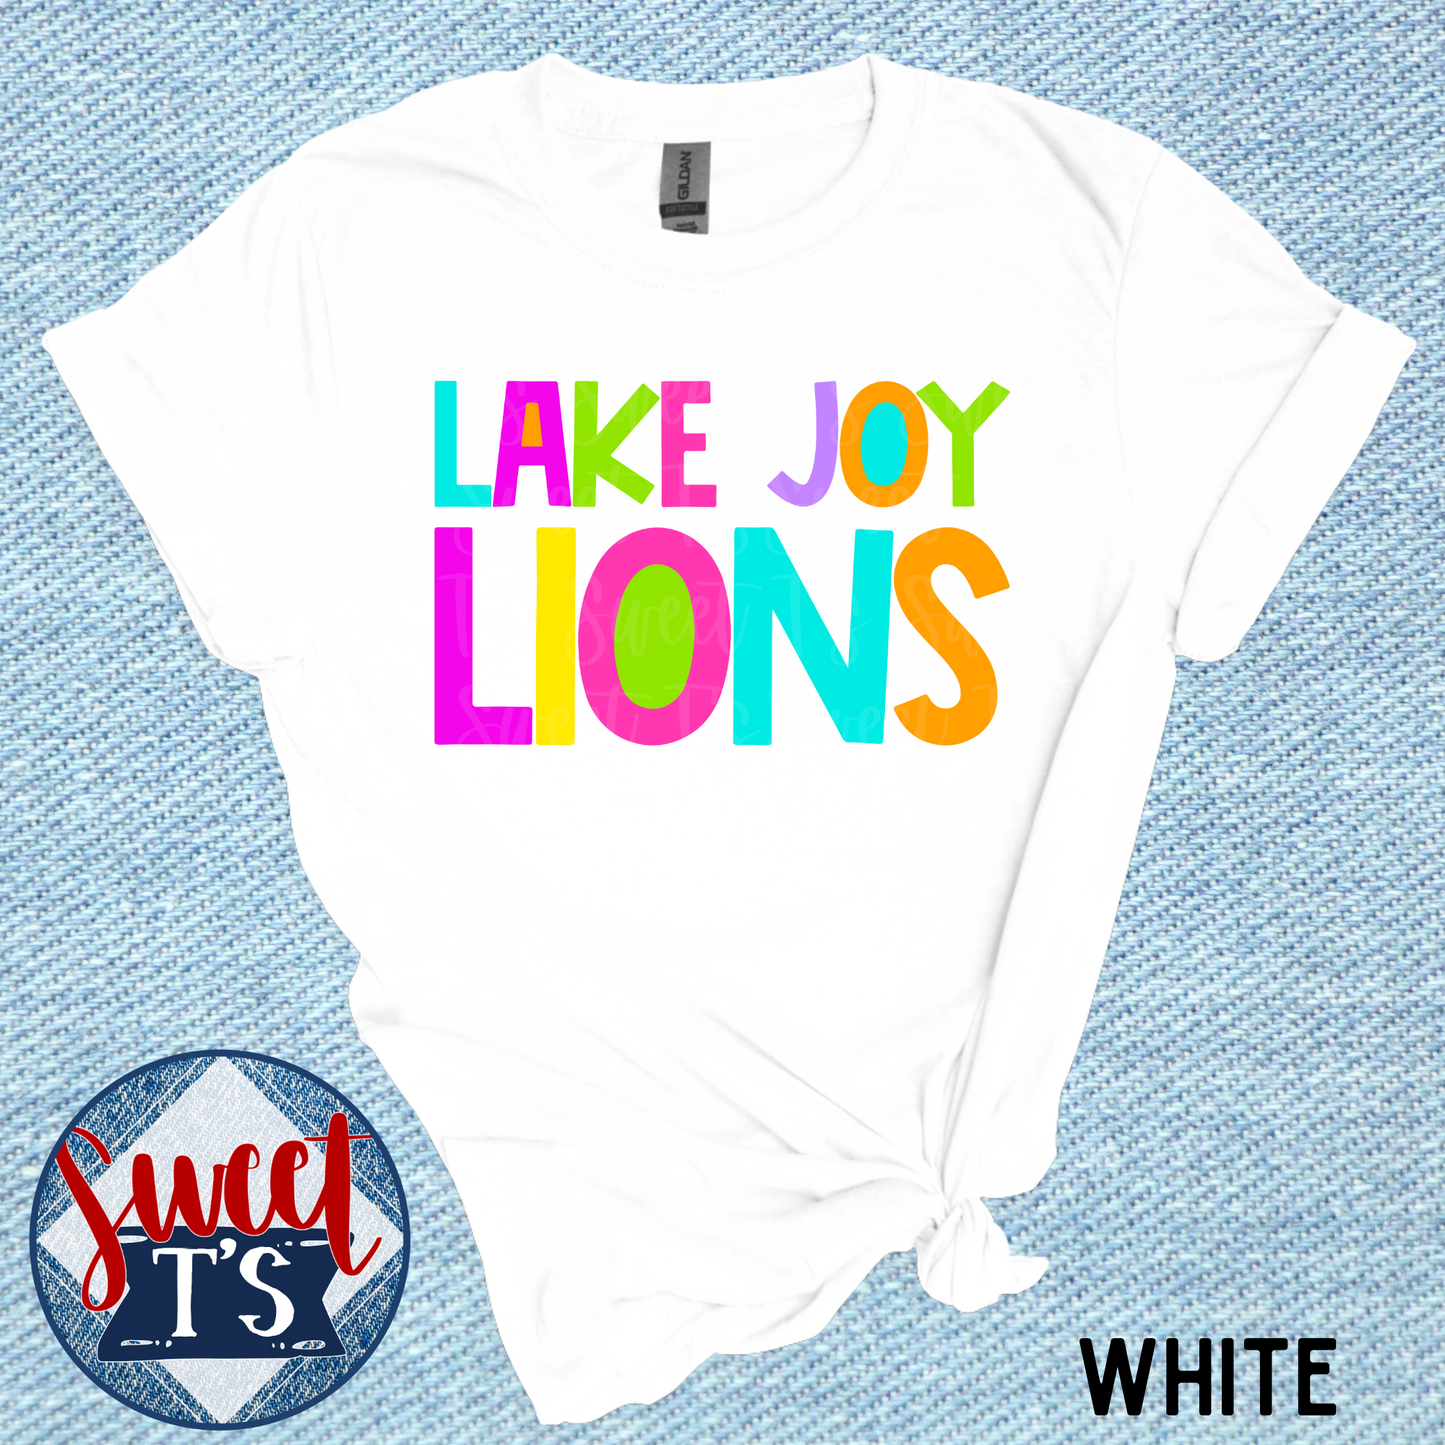 Bright Lake Joy Lions